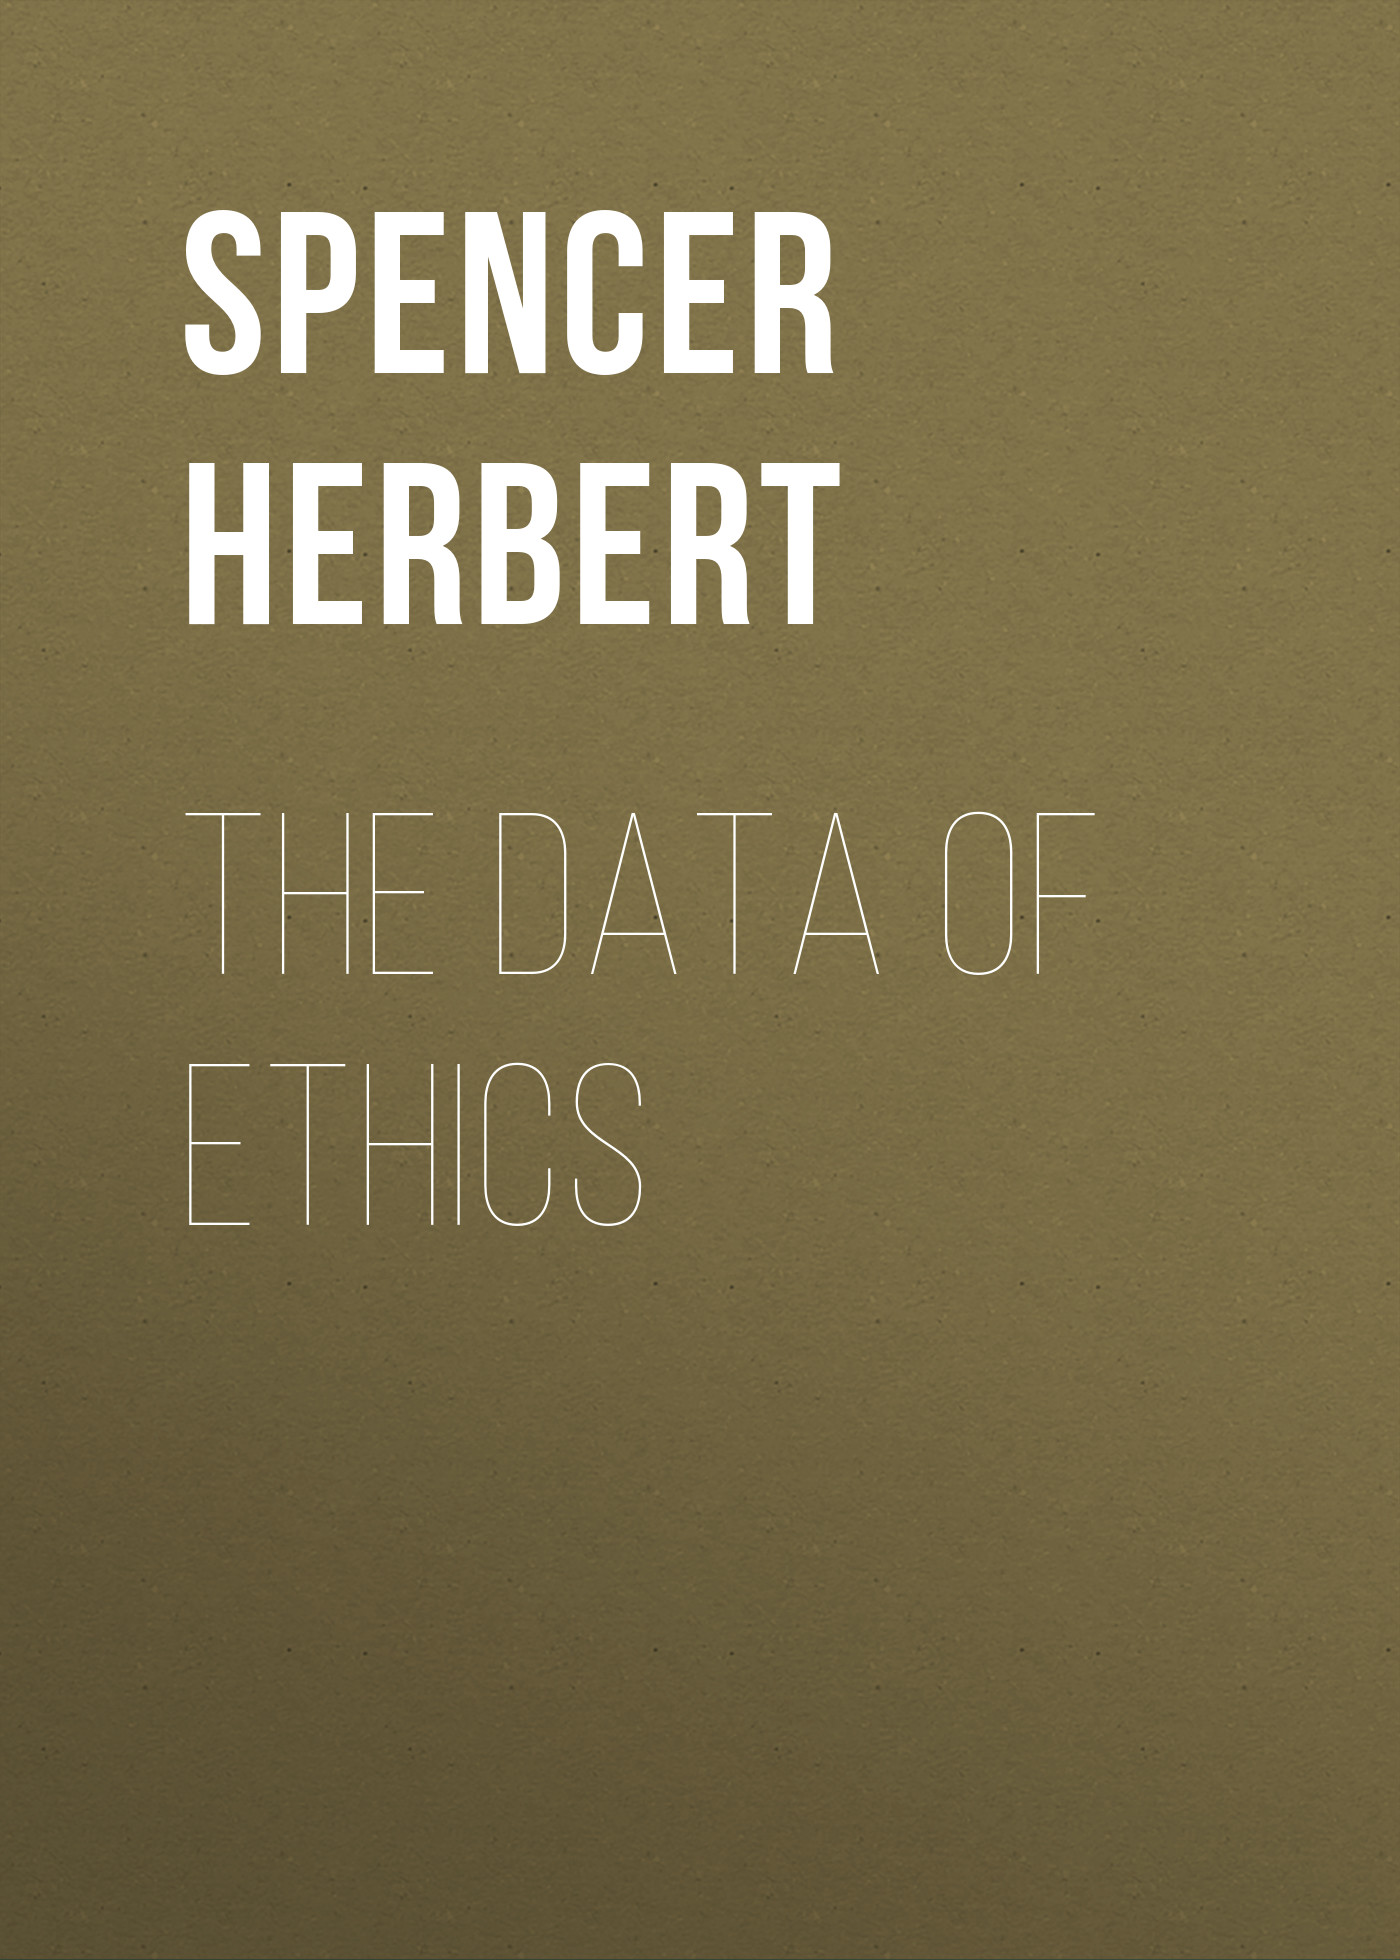 Книга The Data of Ethics из серии , созданная Herbert Spencer, может относится к жанру Философия, Зарубежная старинная литература, Зарубежная классика. Стоимость книги The Data of Ethics  с идентификатором 25475655 составляет 0 руб.